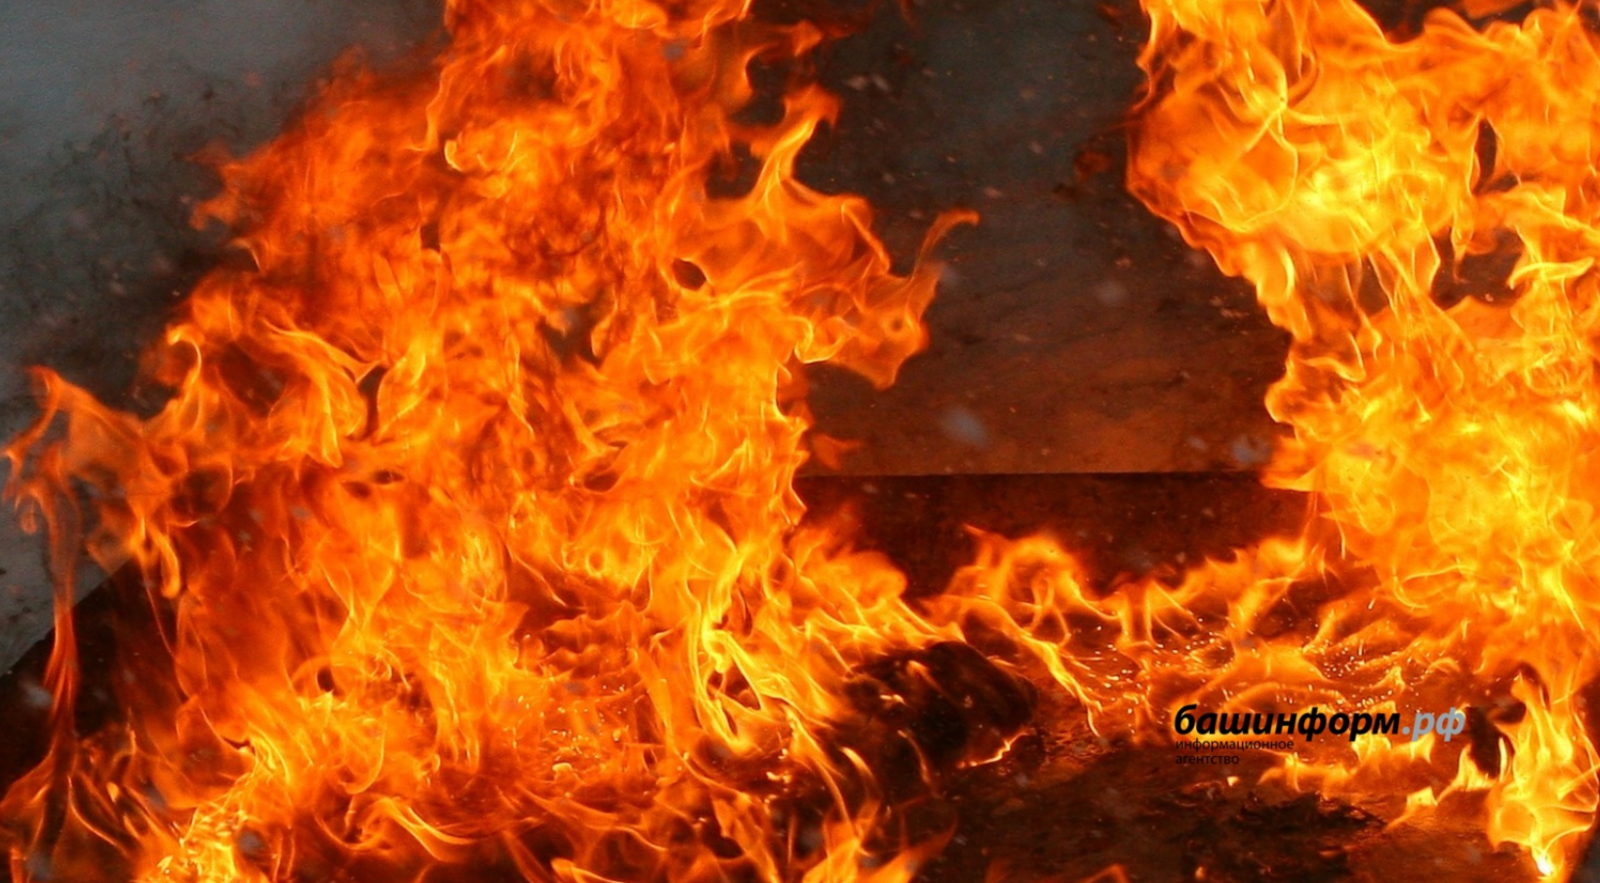 Люди бросают спички: почему горят поля в Башкирии?